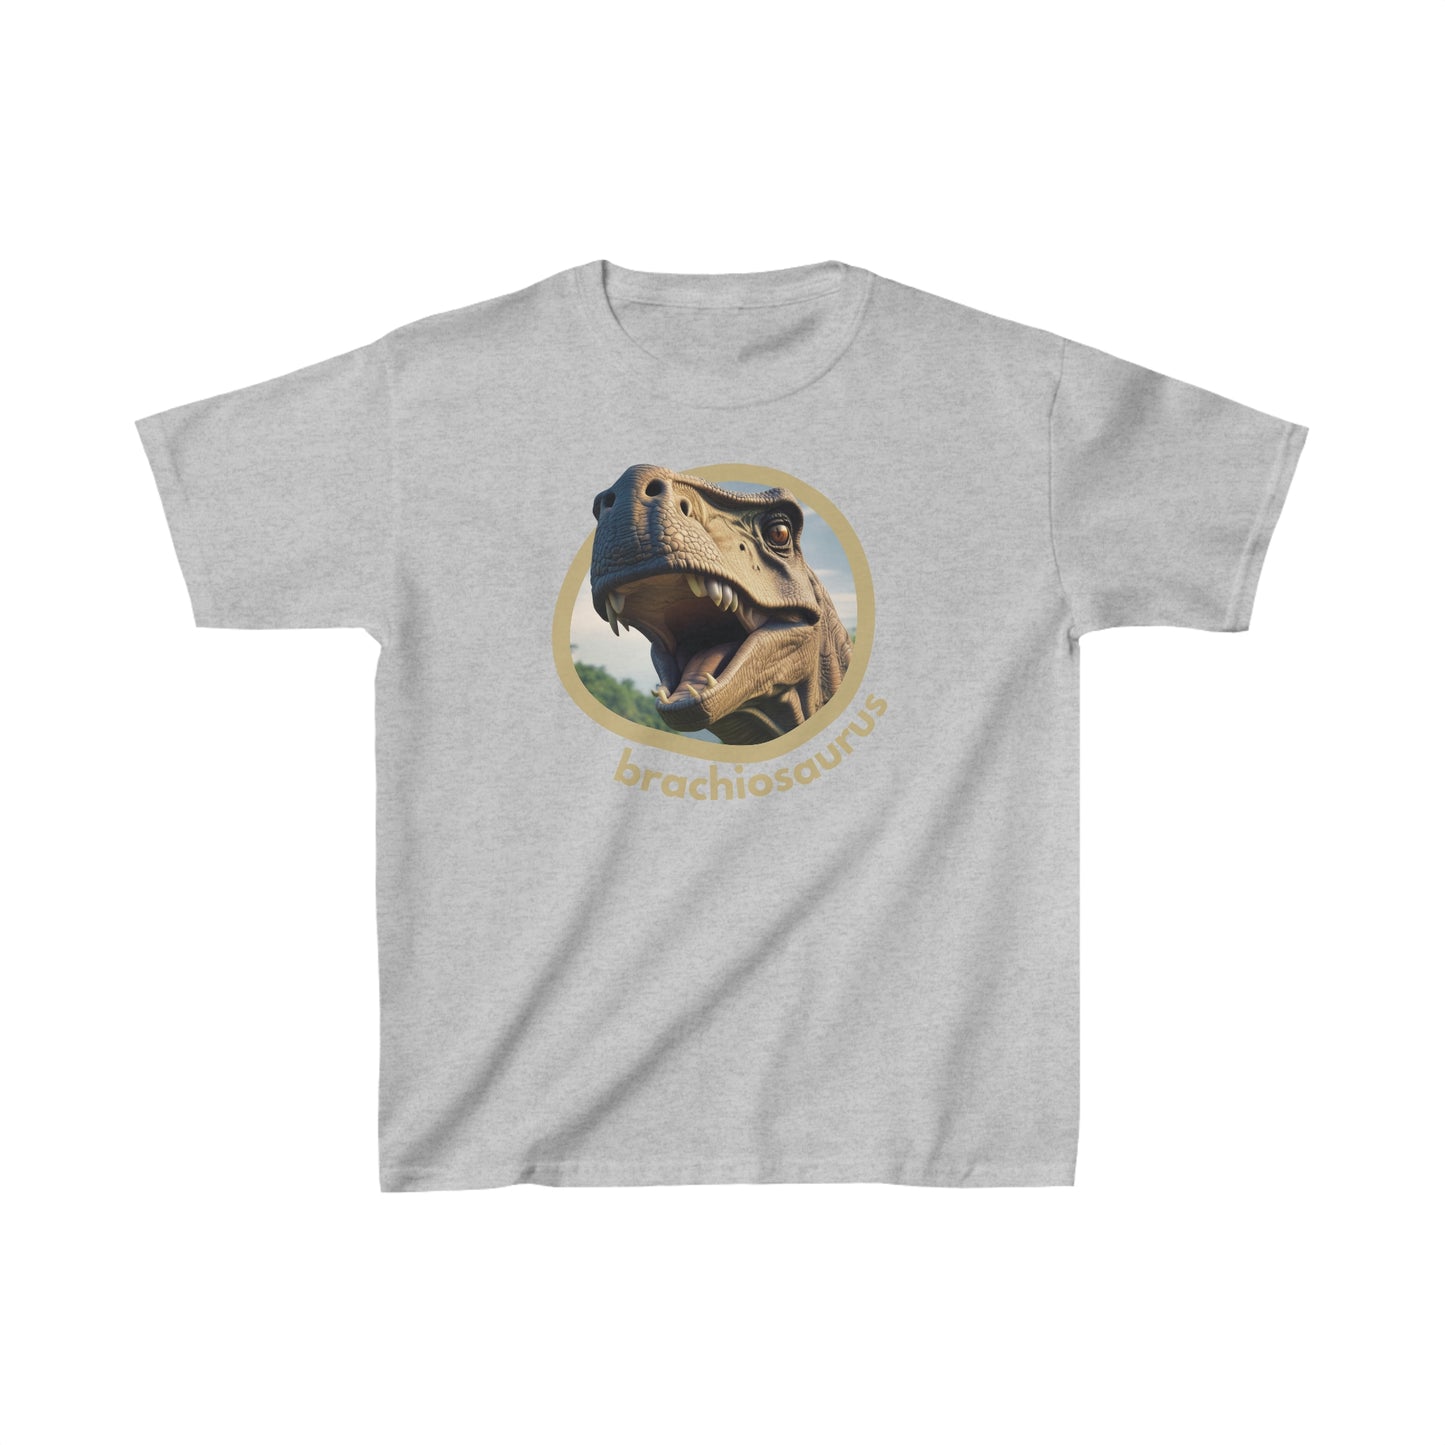 Dinosaurs - Brachiosaurus Tshirt